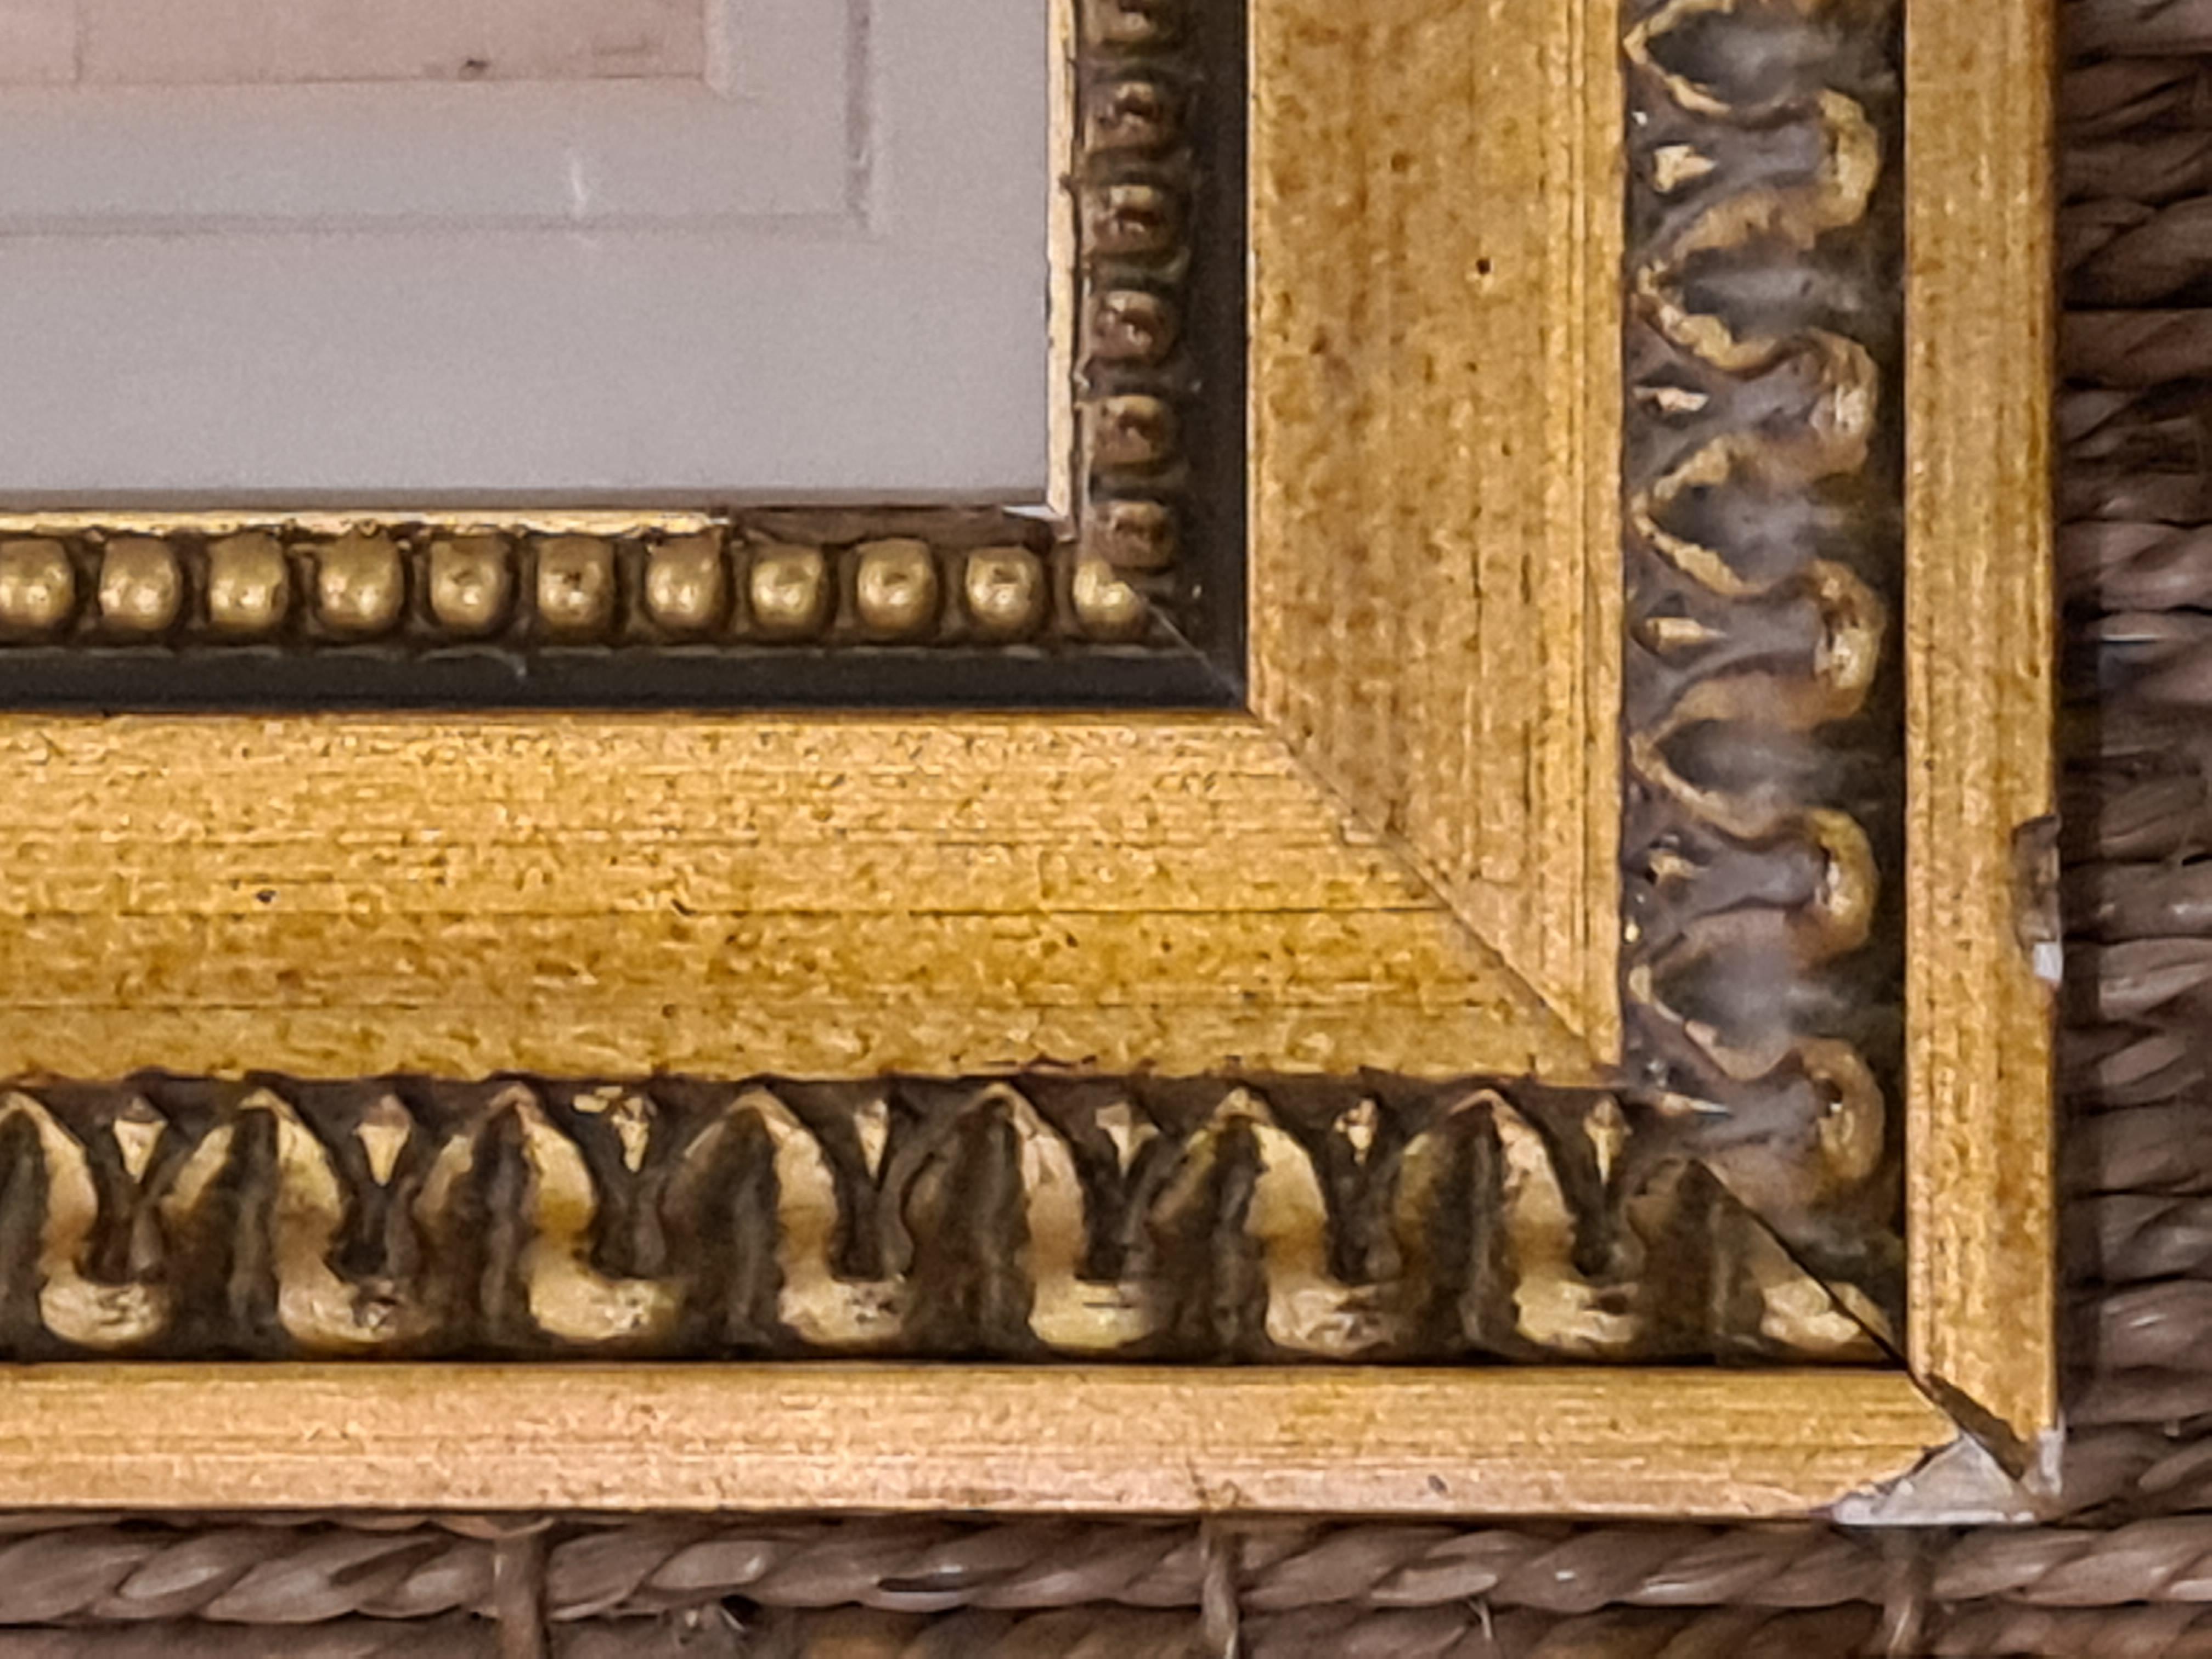 dessin français du 18e siècle de Sanguine, peut-être une esquisse préparatoire pour le tableau de Nattier d'après le tableau de Rubens. Présenté dans une monture de forme 'marie-louise' dans un cadre en bois doré uni avec étiquette de